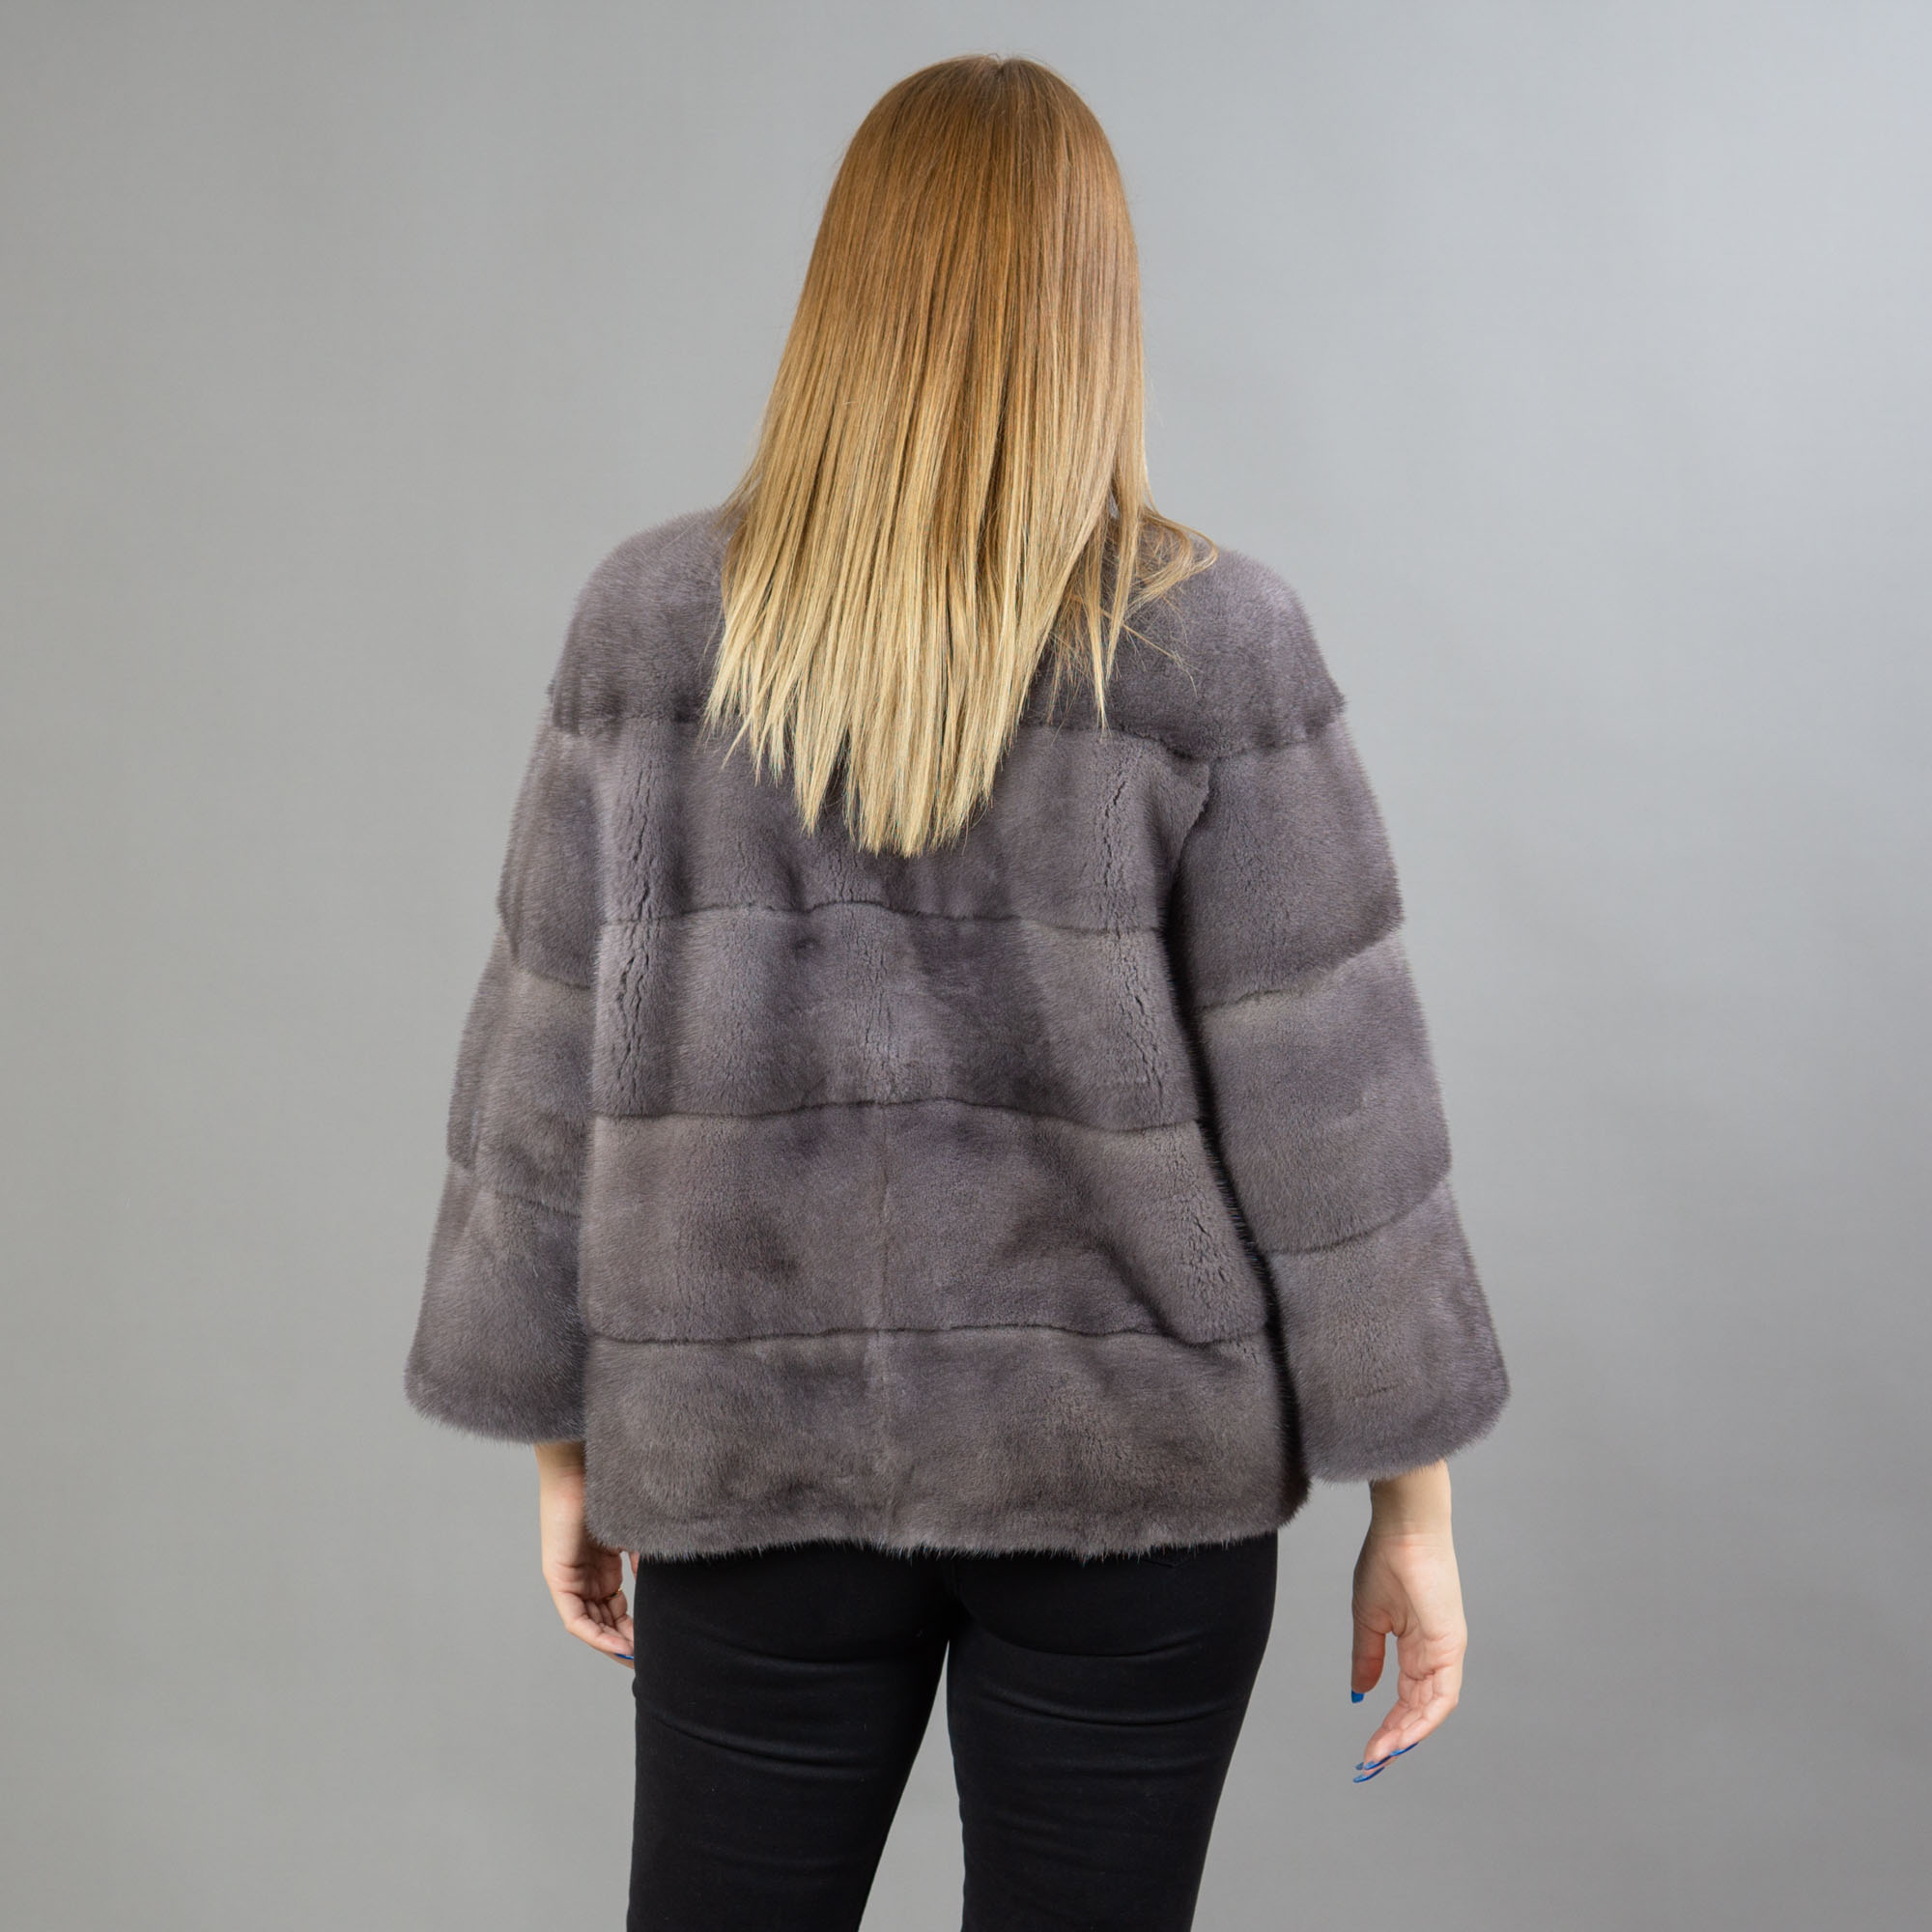 gray mink fur coat / jacket